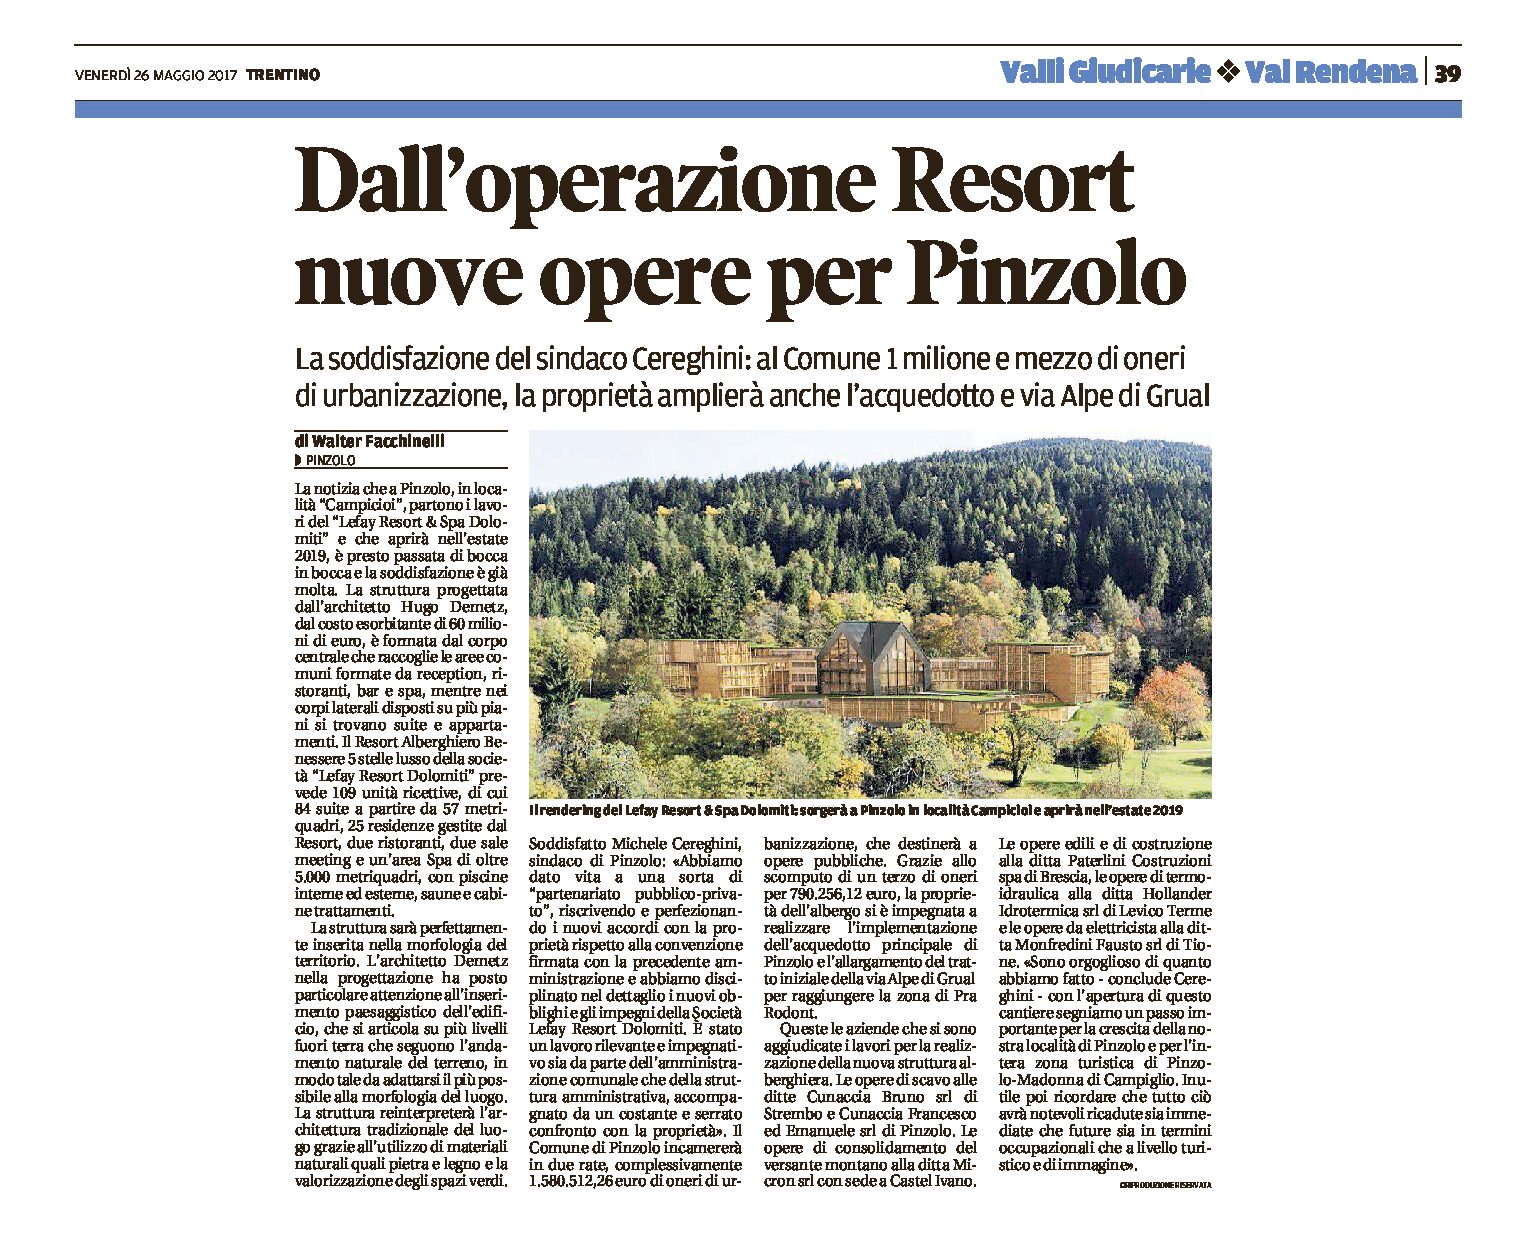 Pinzolo: dall’operazione Resort, nuove opere per la località